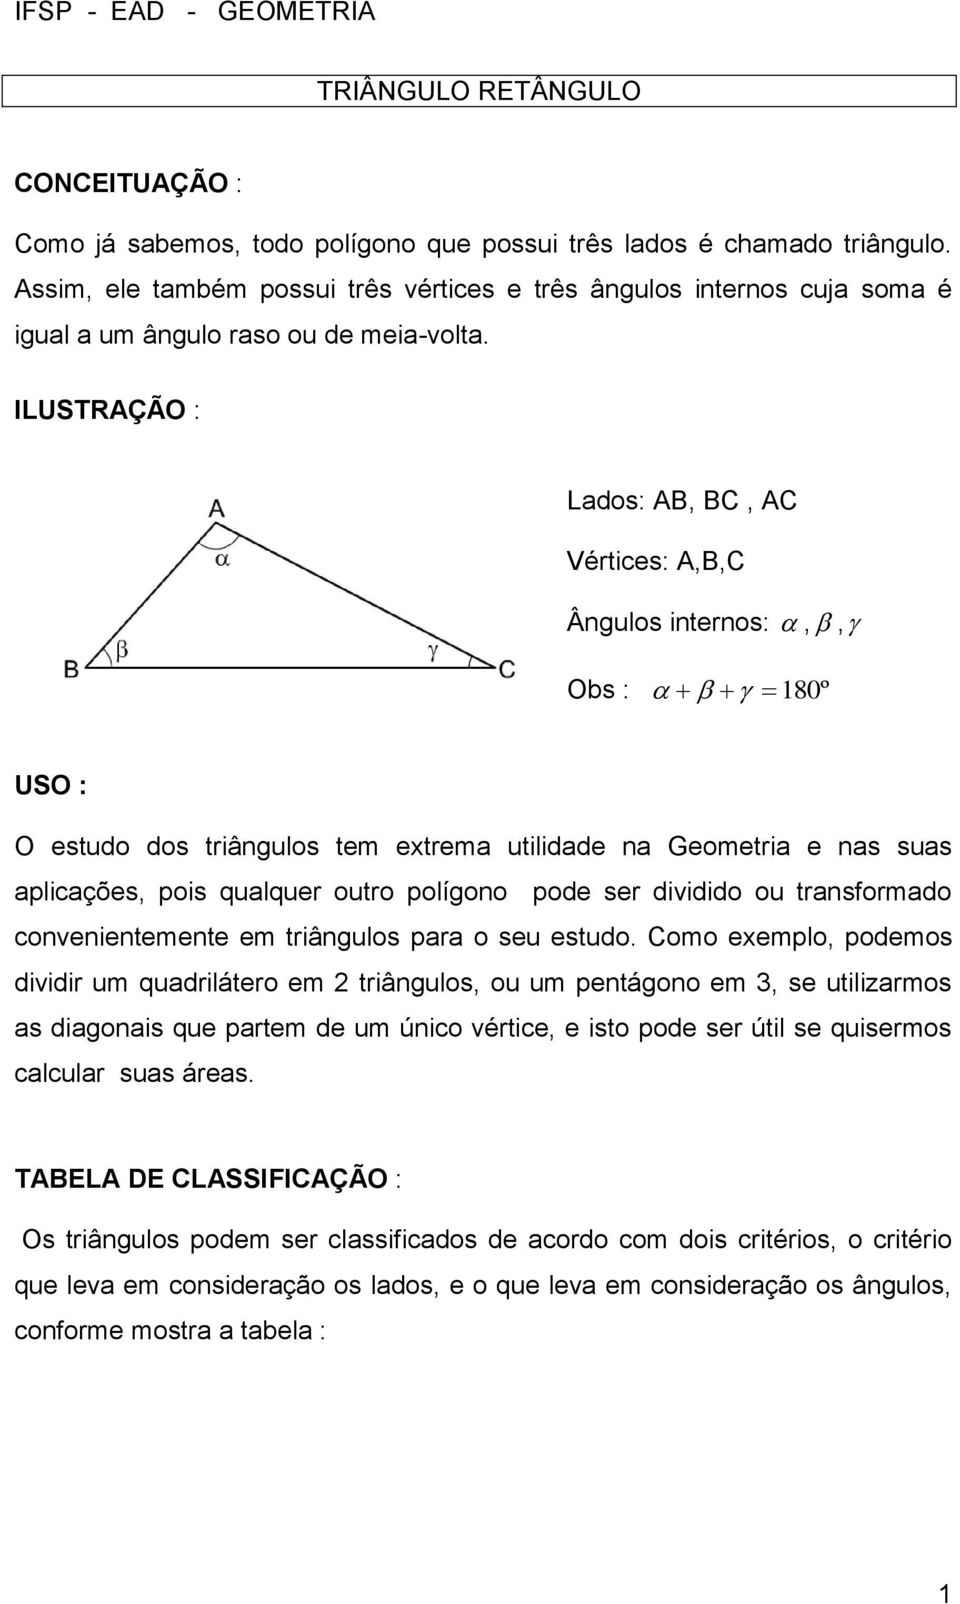 ILUSTRAÇÃO : Lados: AB, BC, AC Vértices: A,B,C Ângulos internos:,, Obs : 180º USO : O estudo dos triângulos tem extrema utilidade na Geometria e nas suas aplicações, pois qualquer outro polígono pode